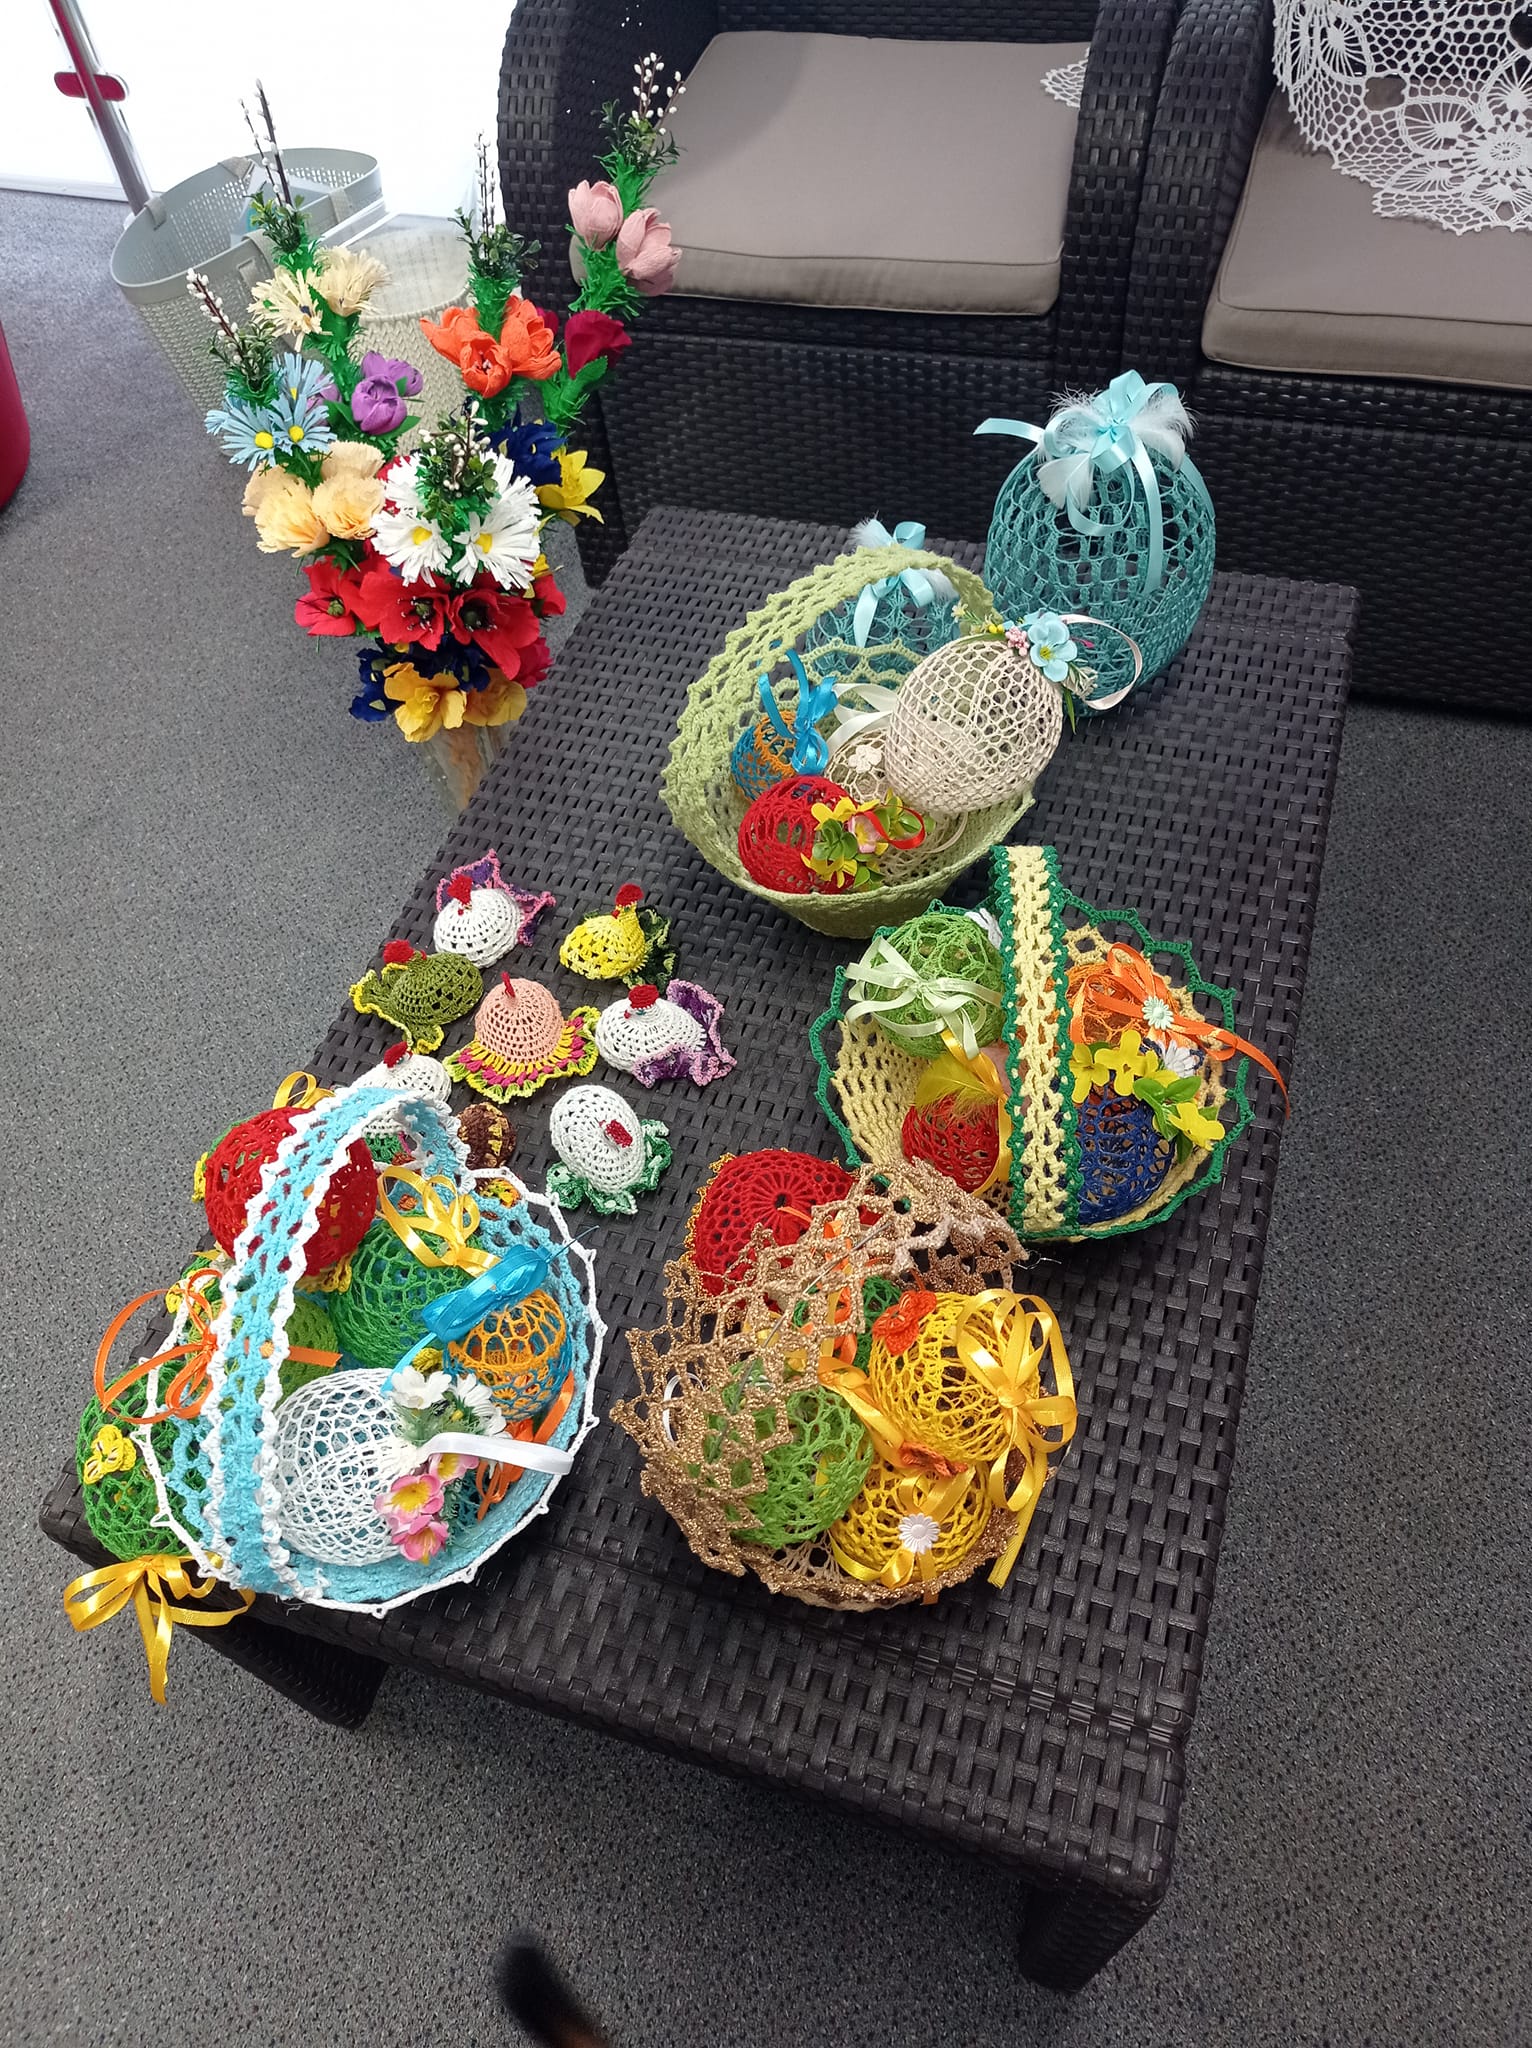 haftowany koszyki z haftowanymi jajkami i inne ozdoby wielkanocne leżą na ratanowym stoliku, obok stoi wazon z kwiatami z krepy